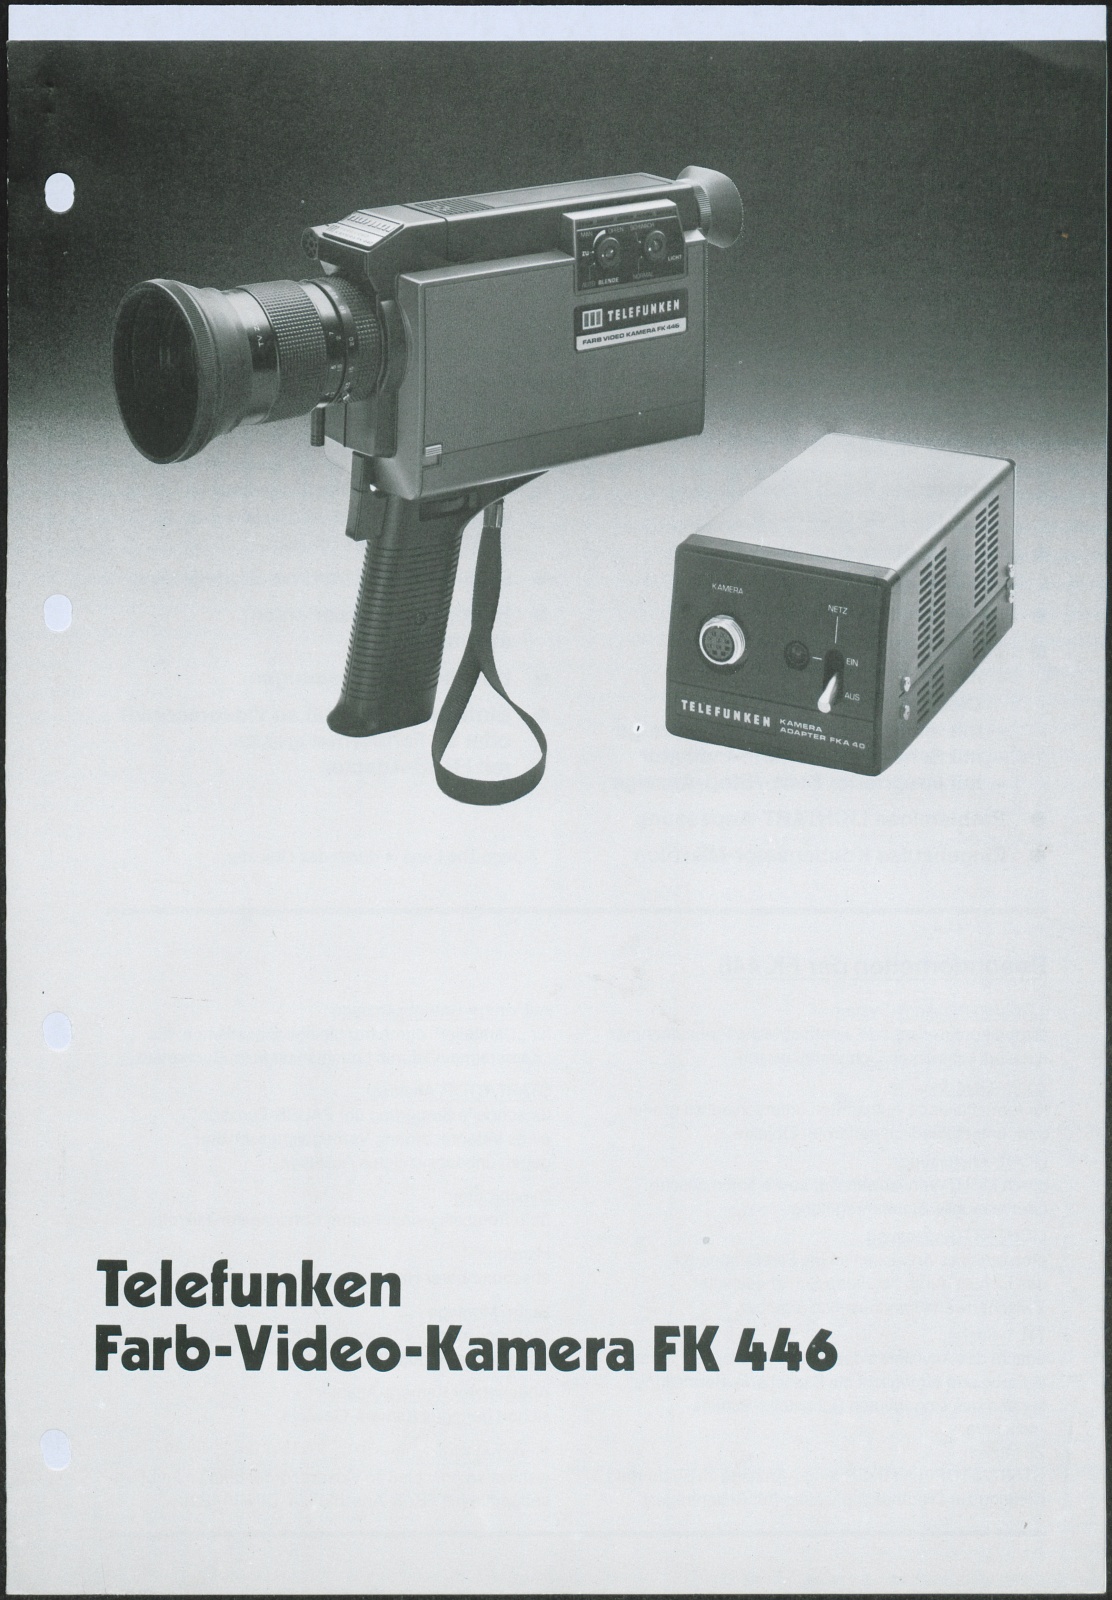 Bedienungsanleitung: Telefunken Farb Video Kamera FK 446 (Stiftung Deutsches Technikmuseum Berlin CC0)